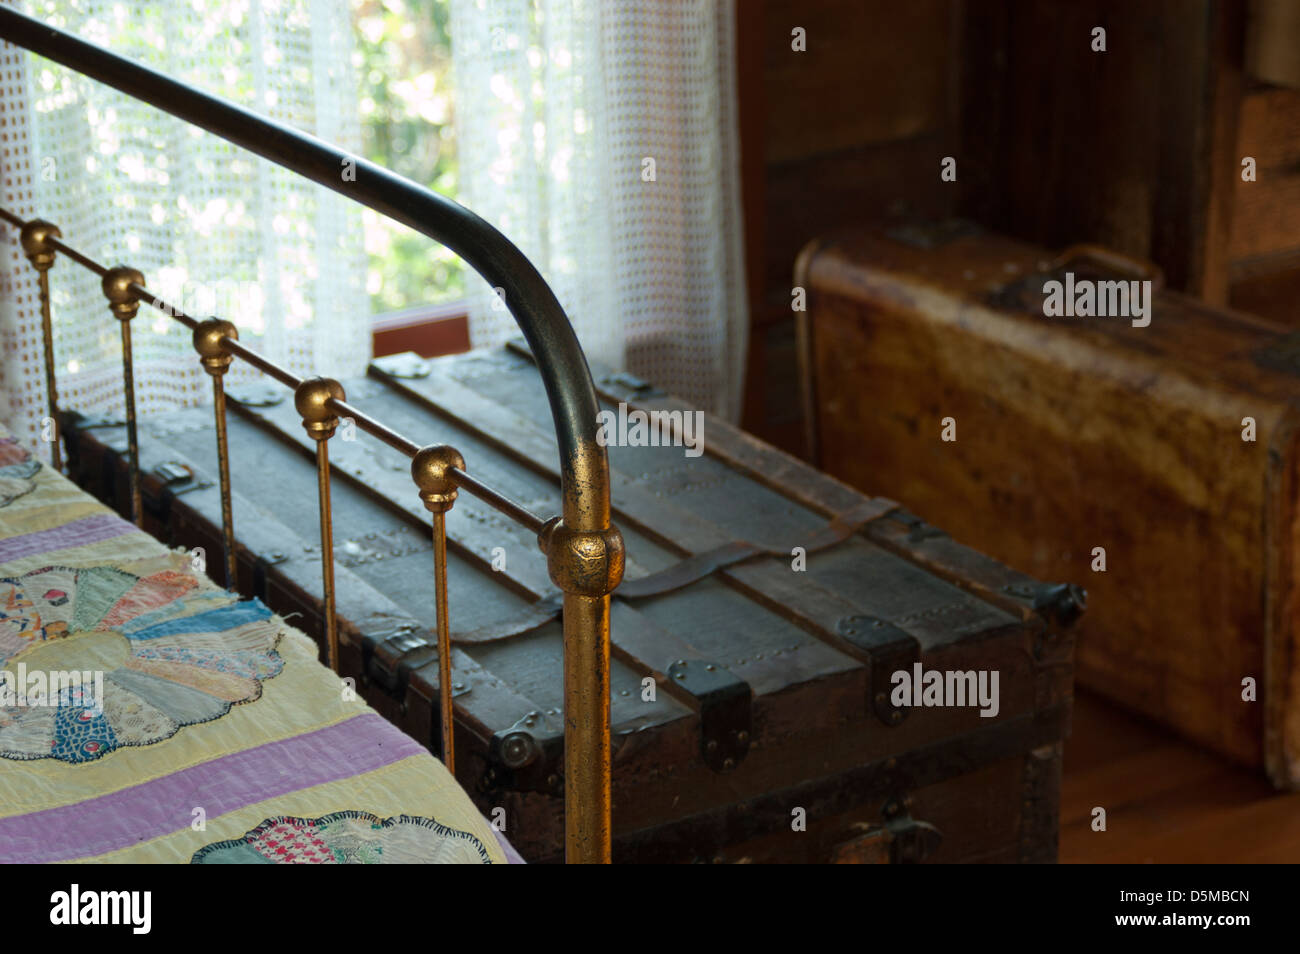 Chambre d'intérieur dans une ferme historique la maison, avec un lit en laiton antique, courtepointe, tronc de voyage et valise. Banque D'Images